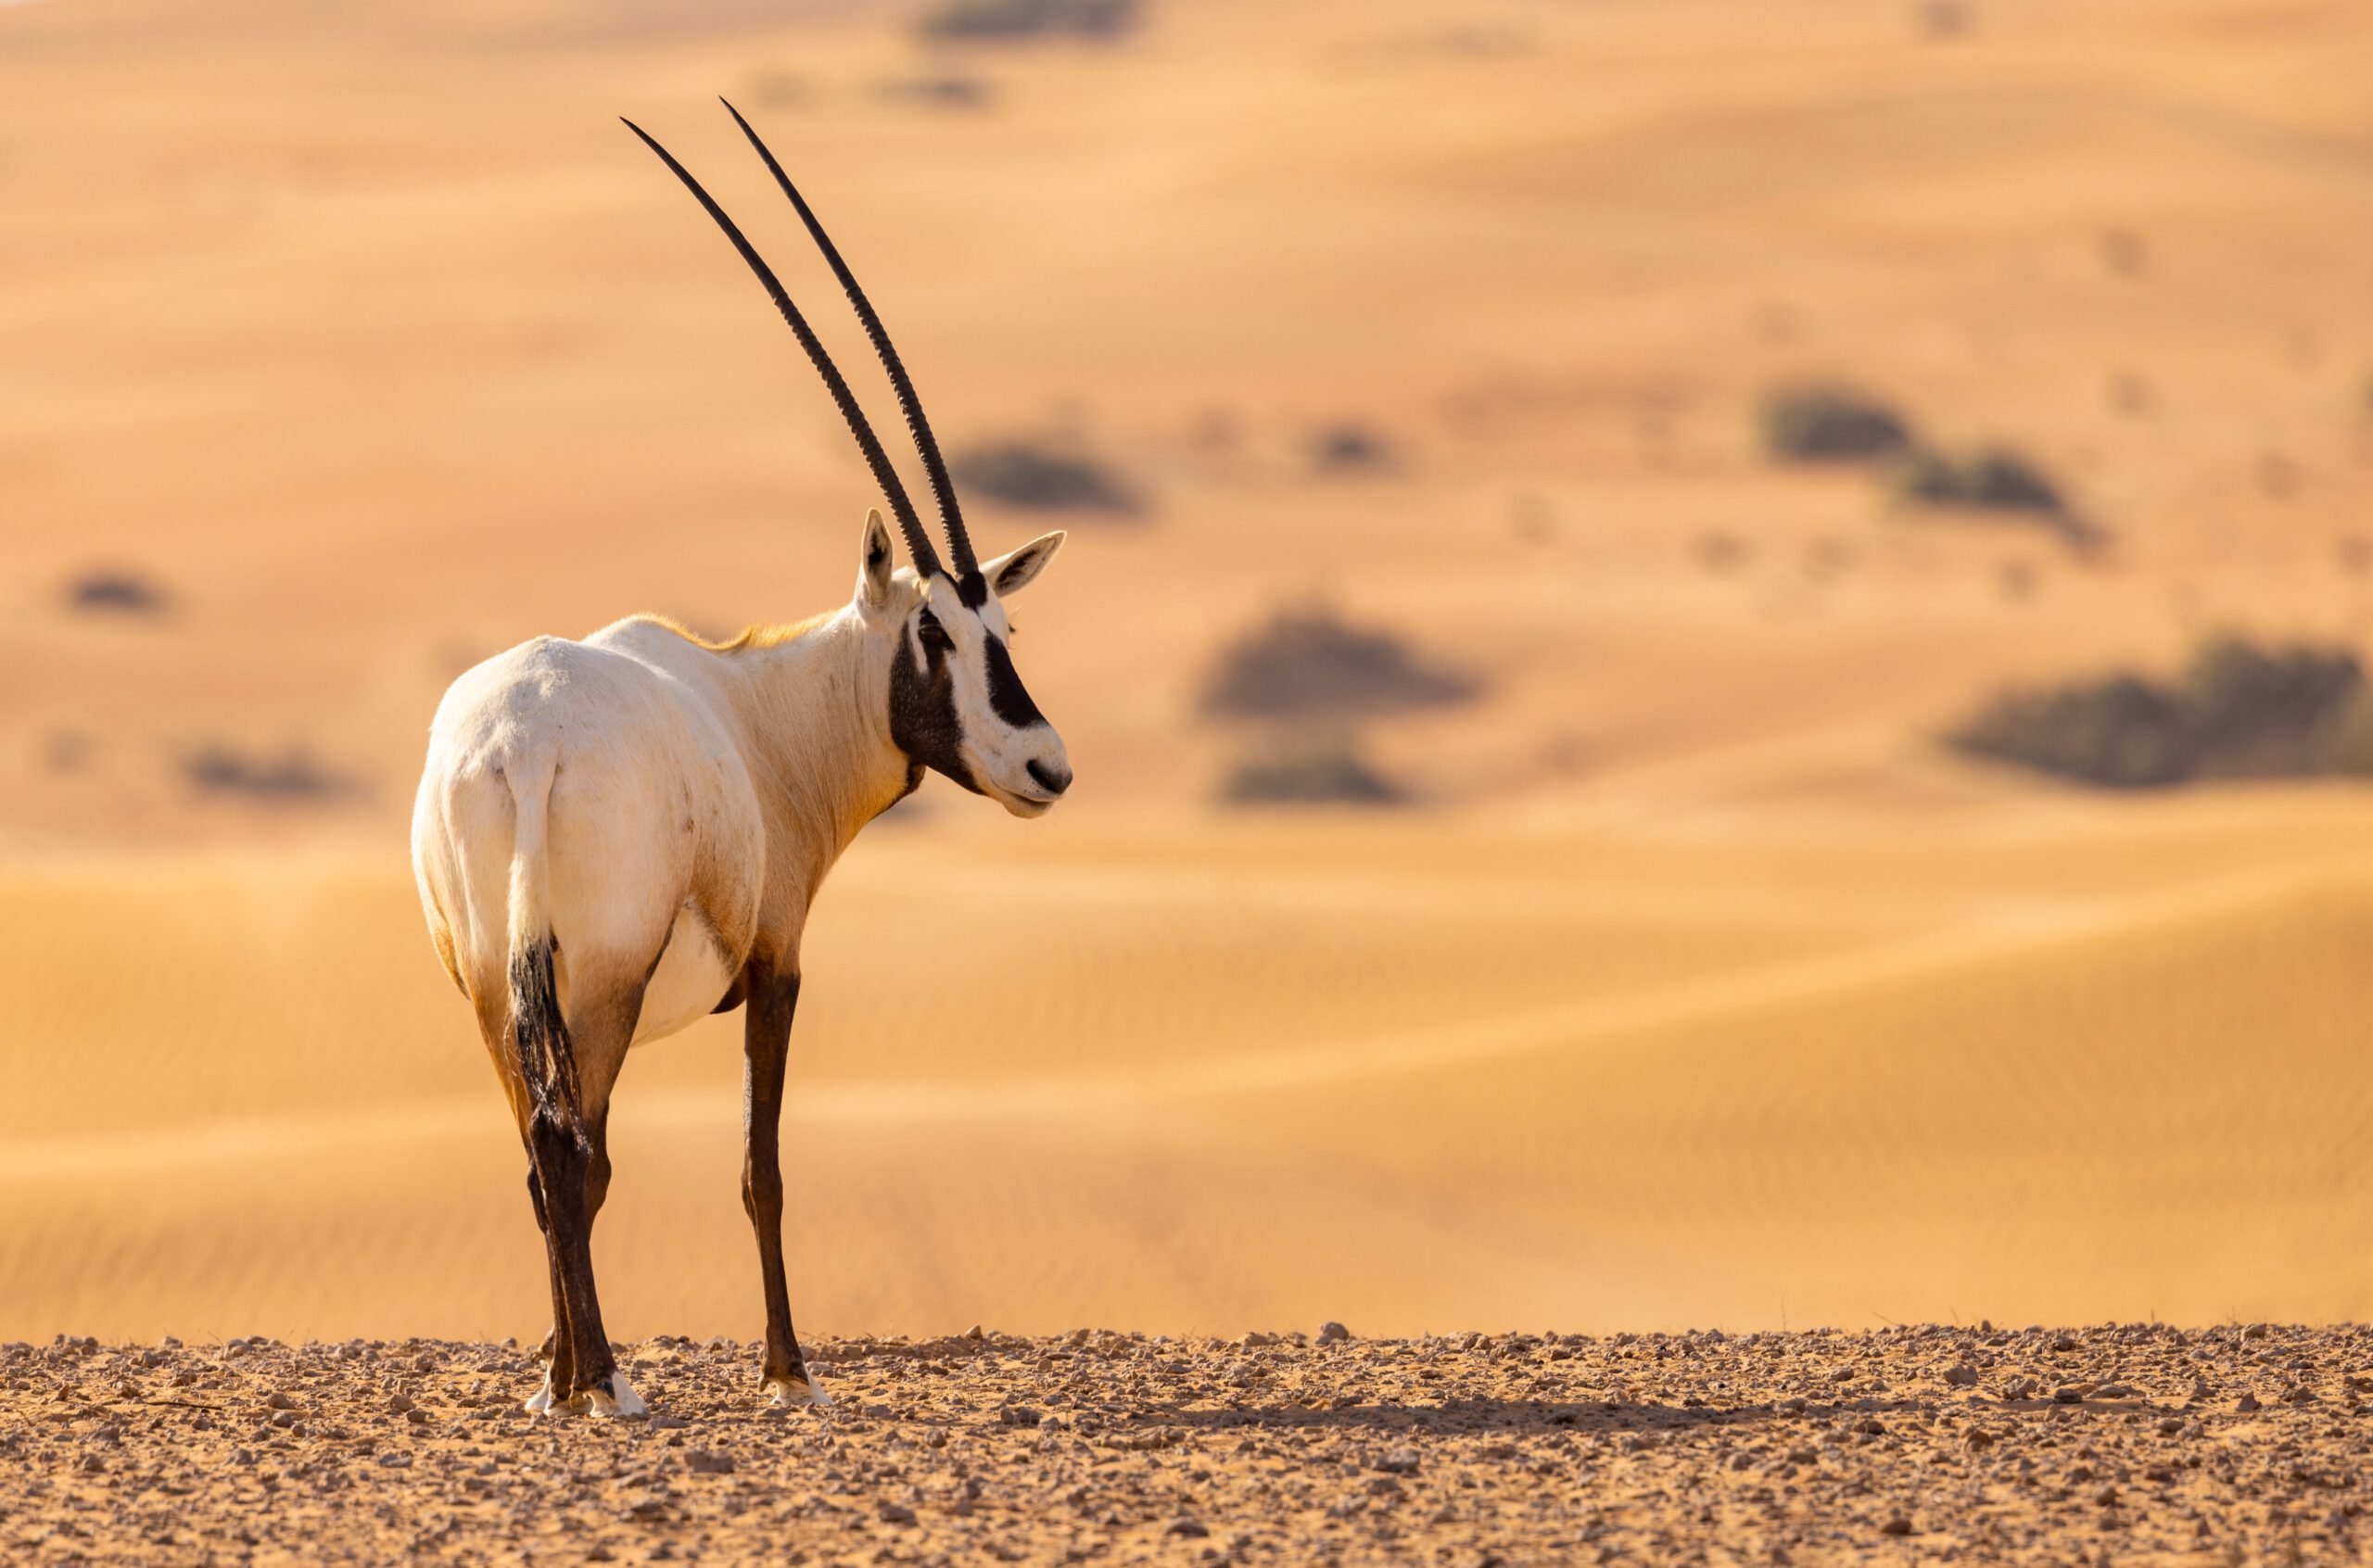 Dubai Safari Park - Arabian Oryx